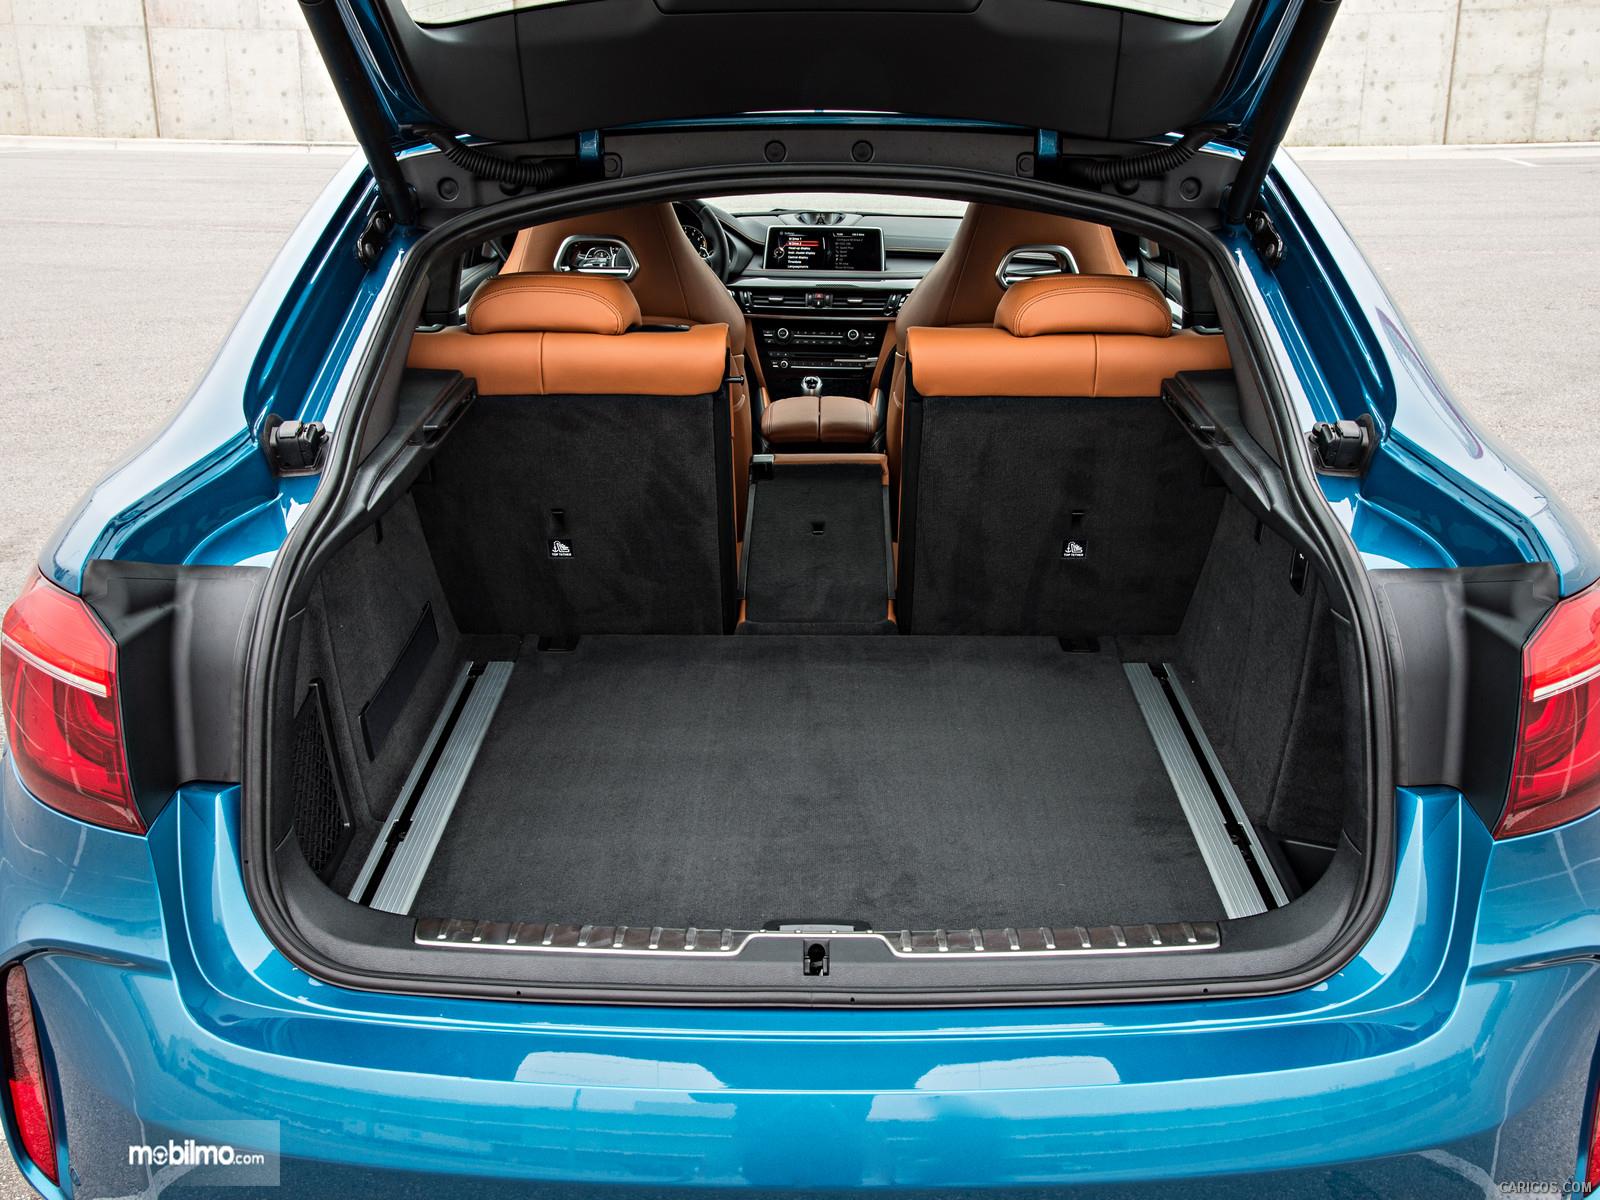 Foto Bagai BMW X6 M 2018 yang cukup luas untuk menampung barang bawaan penumpang